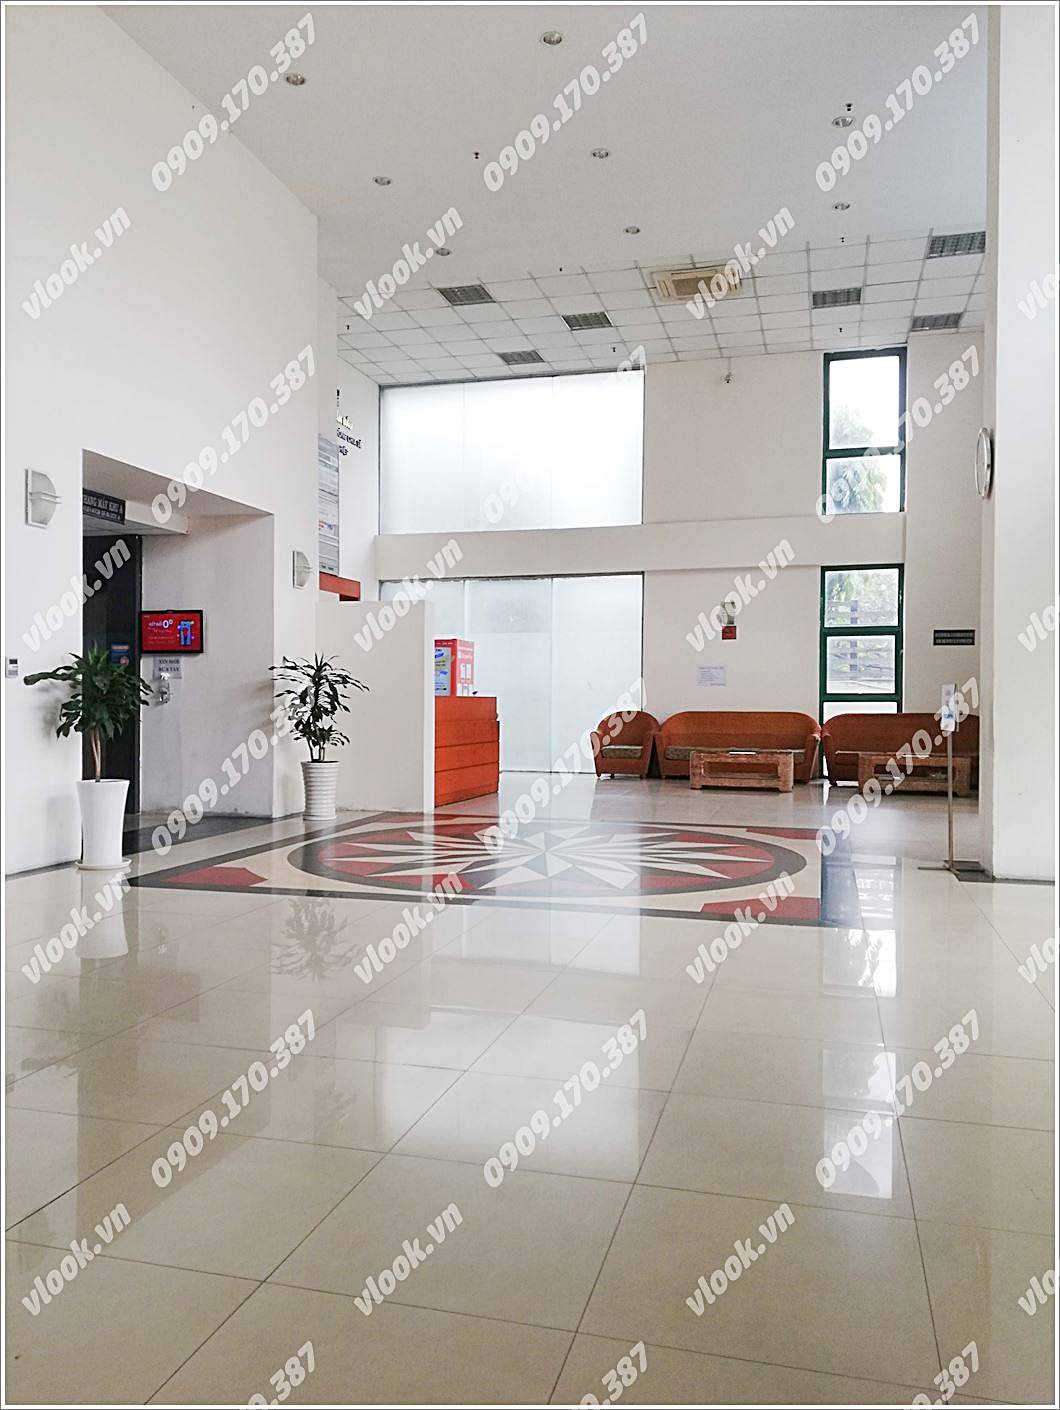 Cao ốc cho thuê văn phòng tòa nhà Indochina Park Tower, Nguyễn Đình Chiểu, Quận 1, TPHCM - vlook.vn